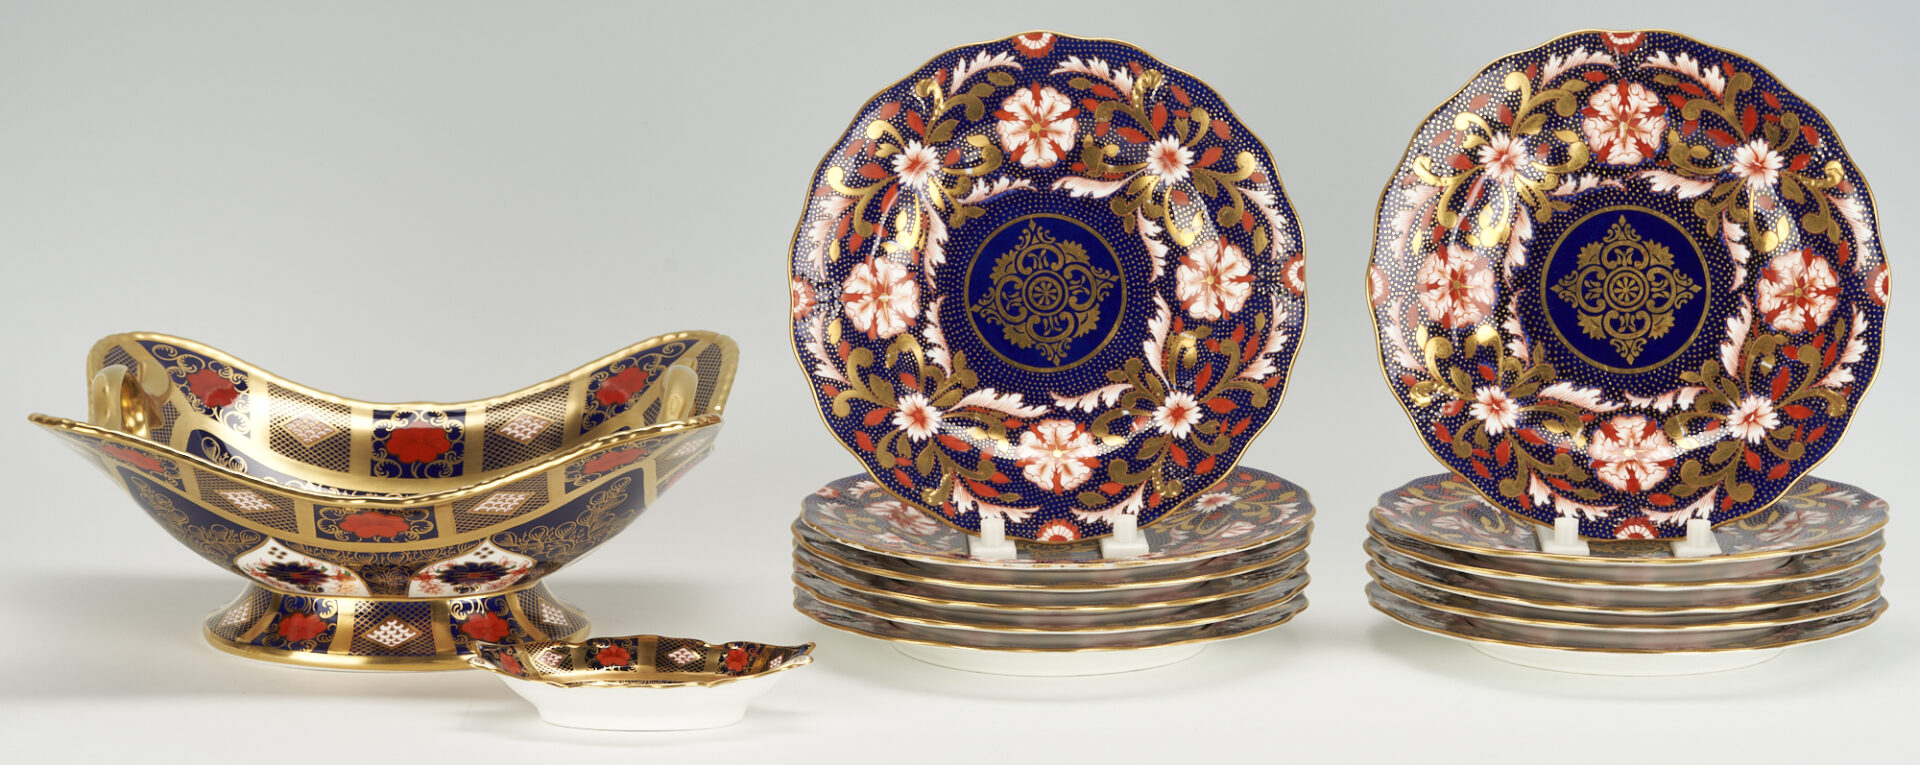 Lot 258: 14 Royal Crown Derby Porcelain Items, incl. Davis Collamore